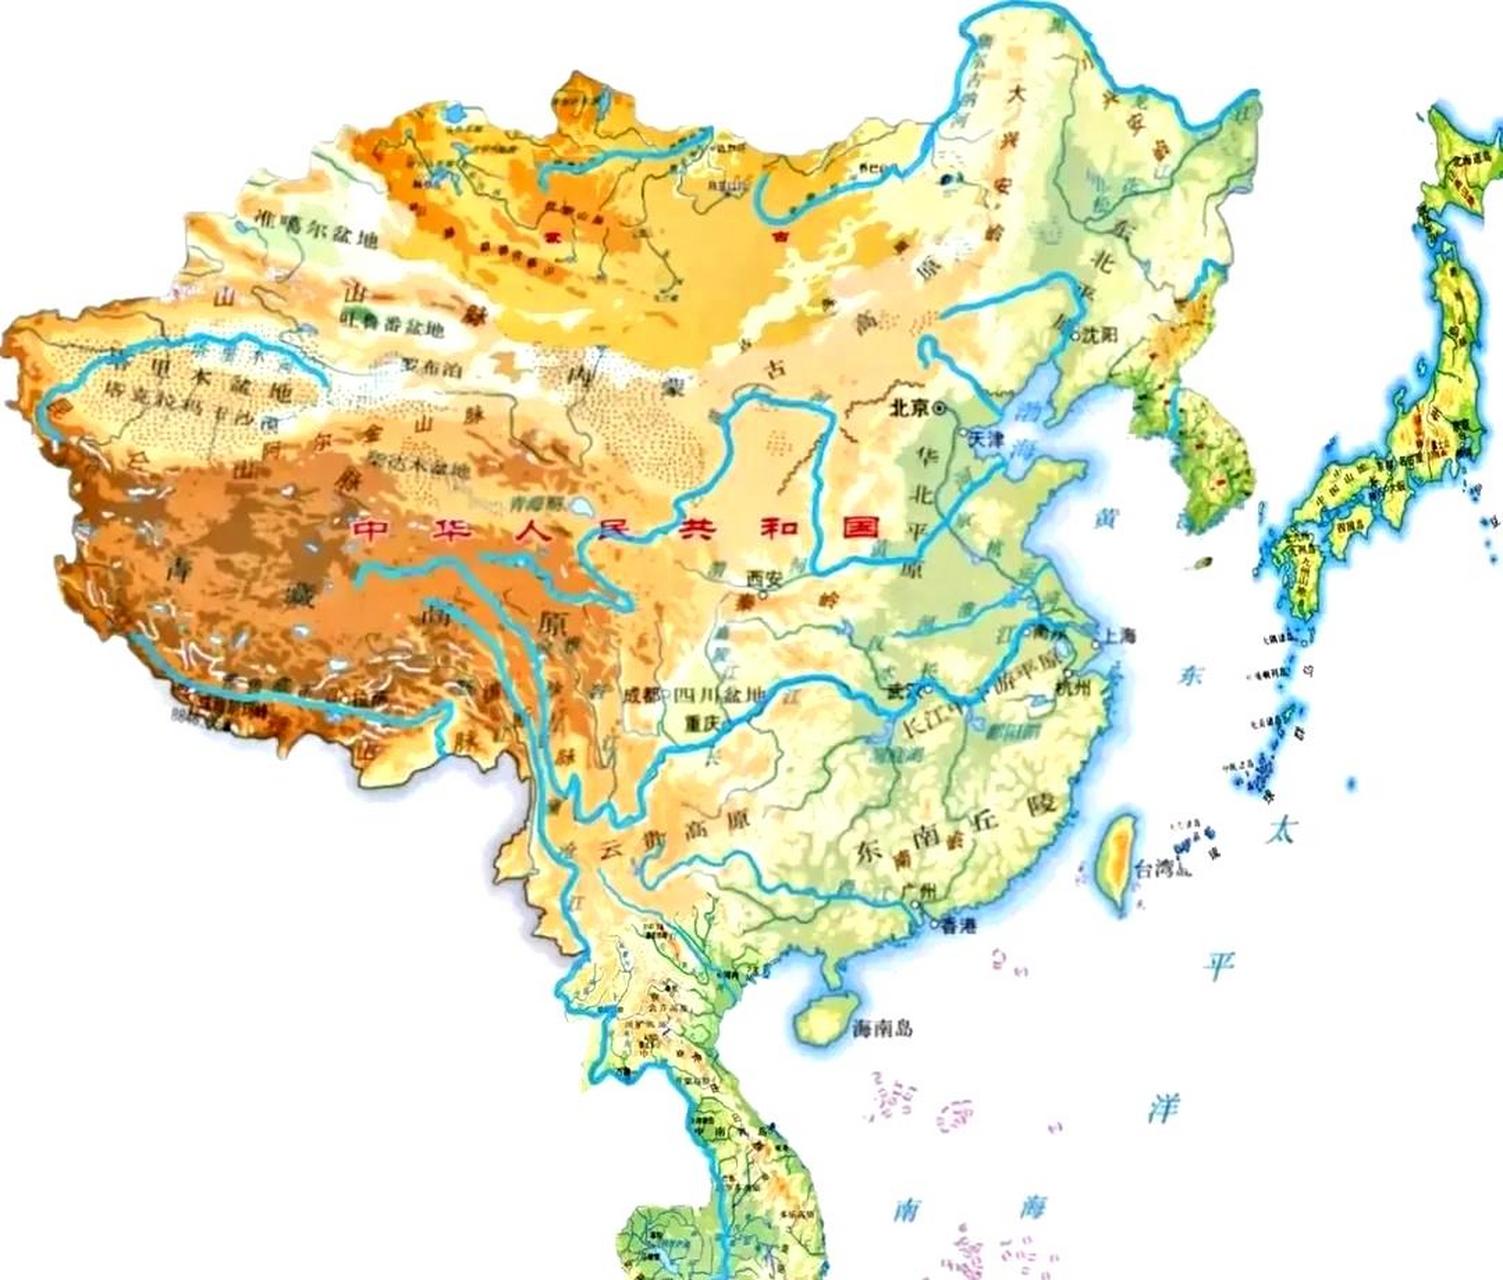 这是中国最完美的领土范围吗?